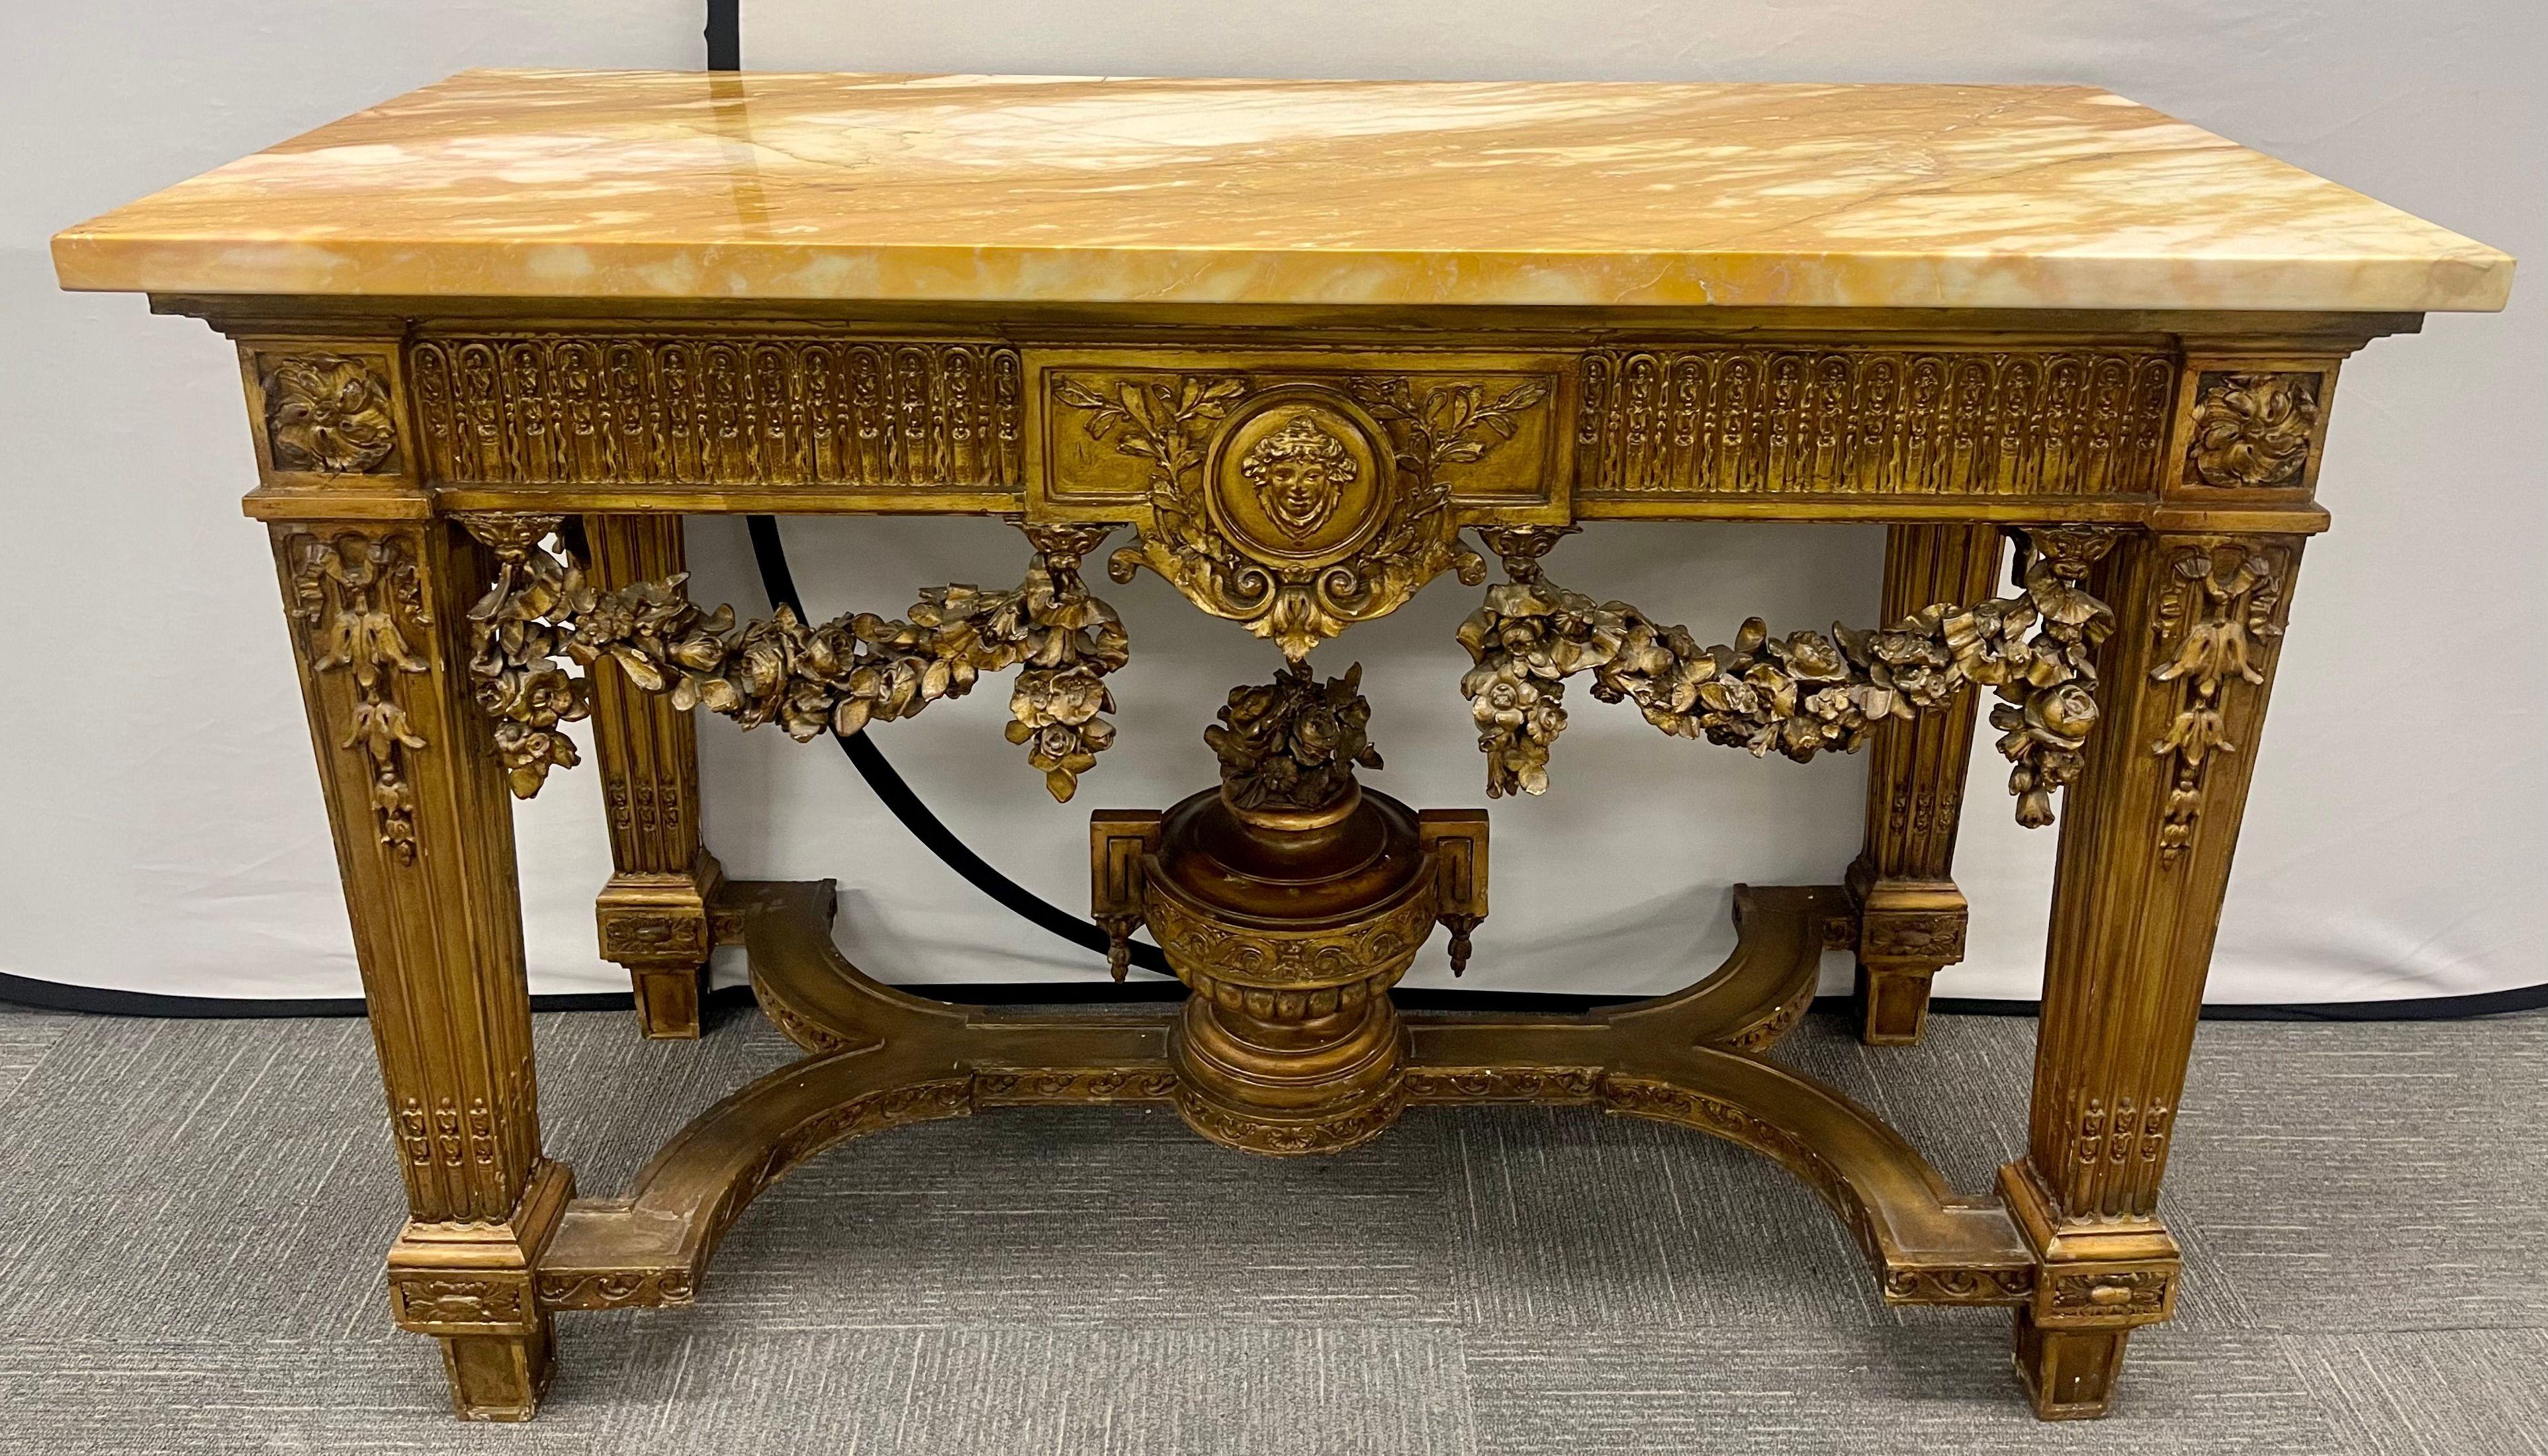 Console en bois doré de style Louis XV du début du siècle, avec plateau en marbre et châssis en forme d'urne. Cette table console finement sculptée représente l'ère de la vie grandiose à son apogée. Dans une finition dorée usée, avec des guirlandes